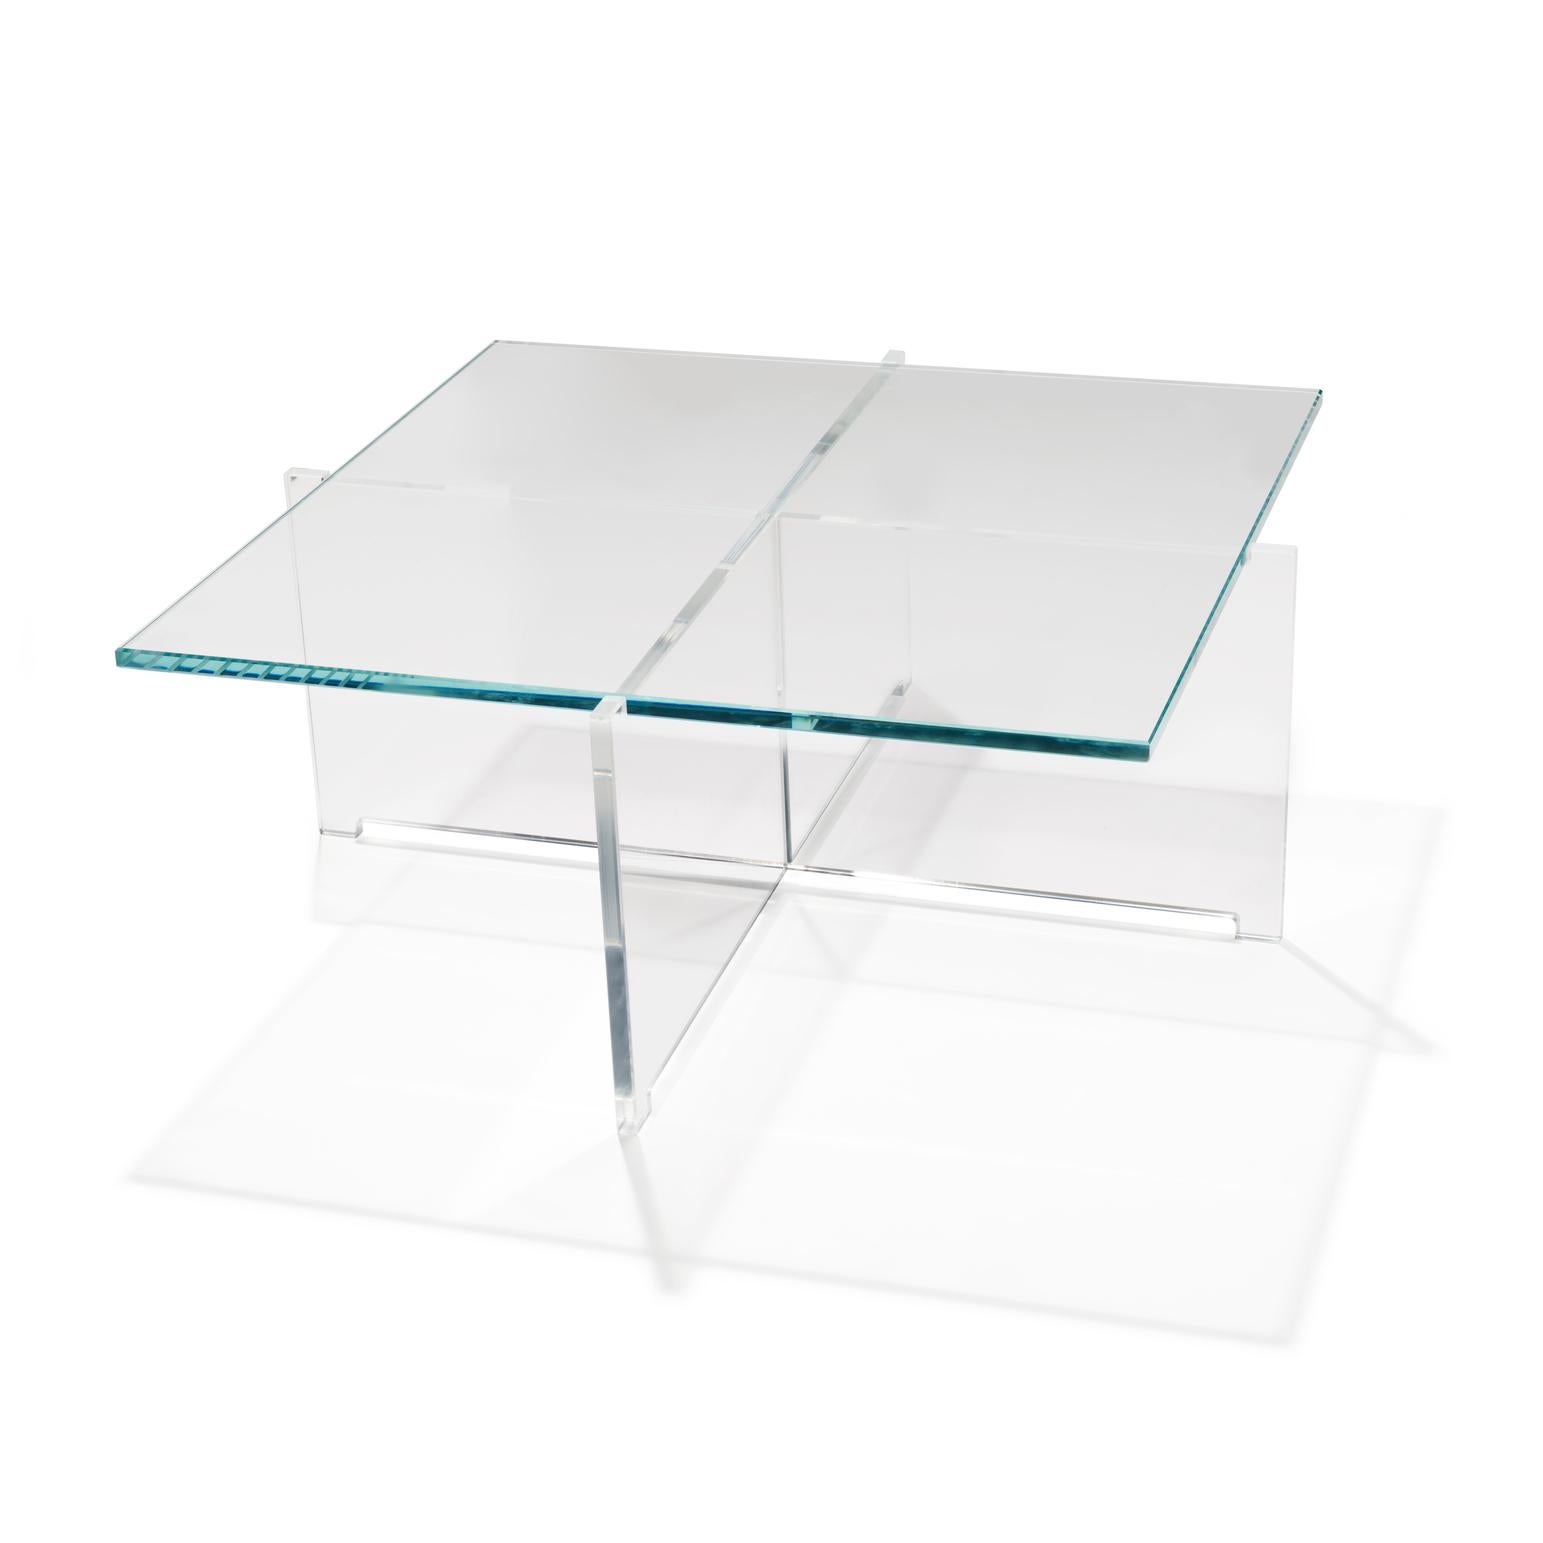 Tisch, entworfen von Bodil Kjær im Jahr 1959. 

Der niedrige CrossPlex-Tisch wurde als Teil von Kjærs zukunftsweisendem funktionalen Möbelprogramm Elements of Architecture entwickelt, das zwischen 1955 und 1963 entstand. Im Laufe der Jahrzehnte